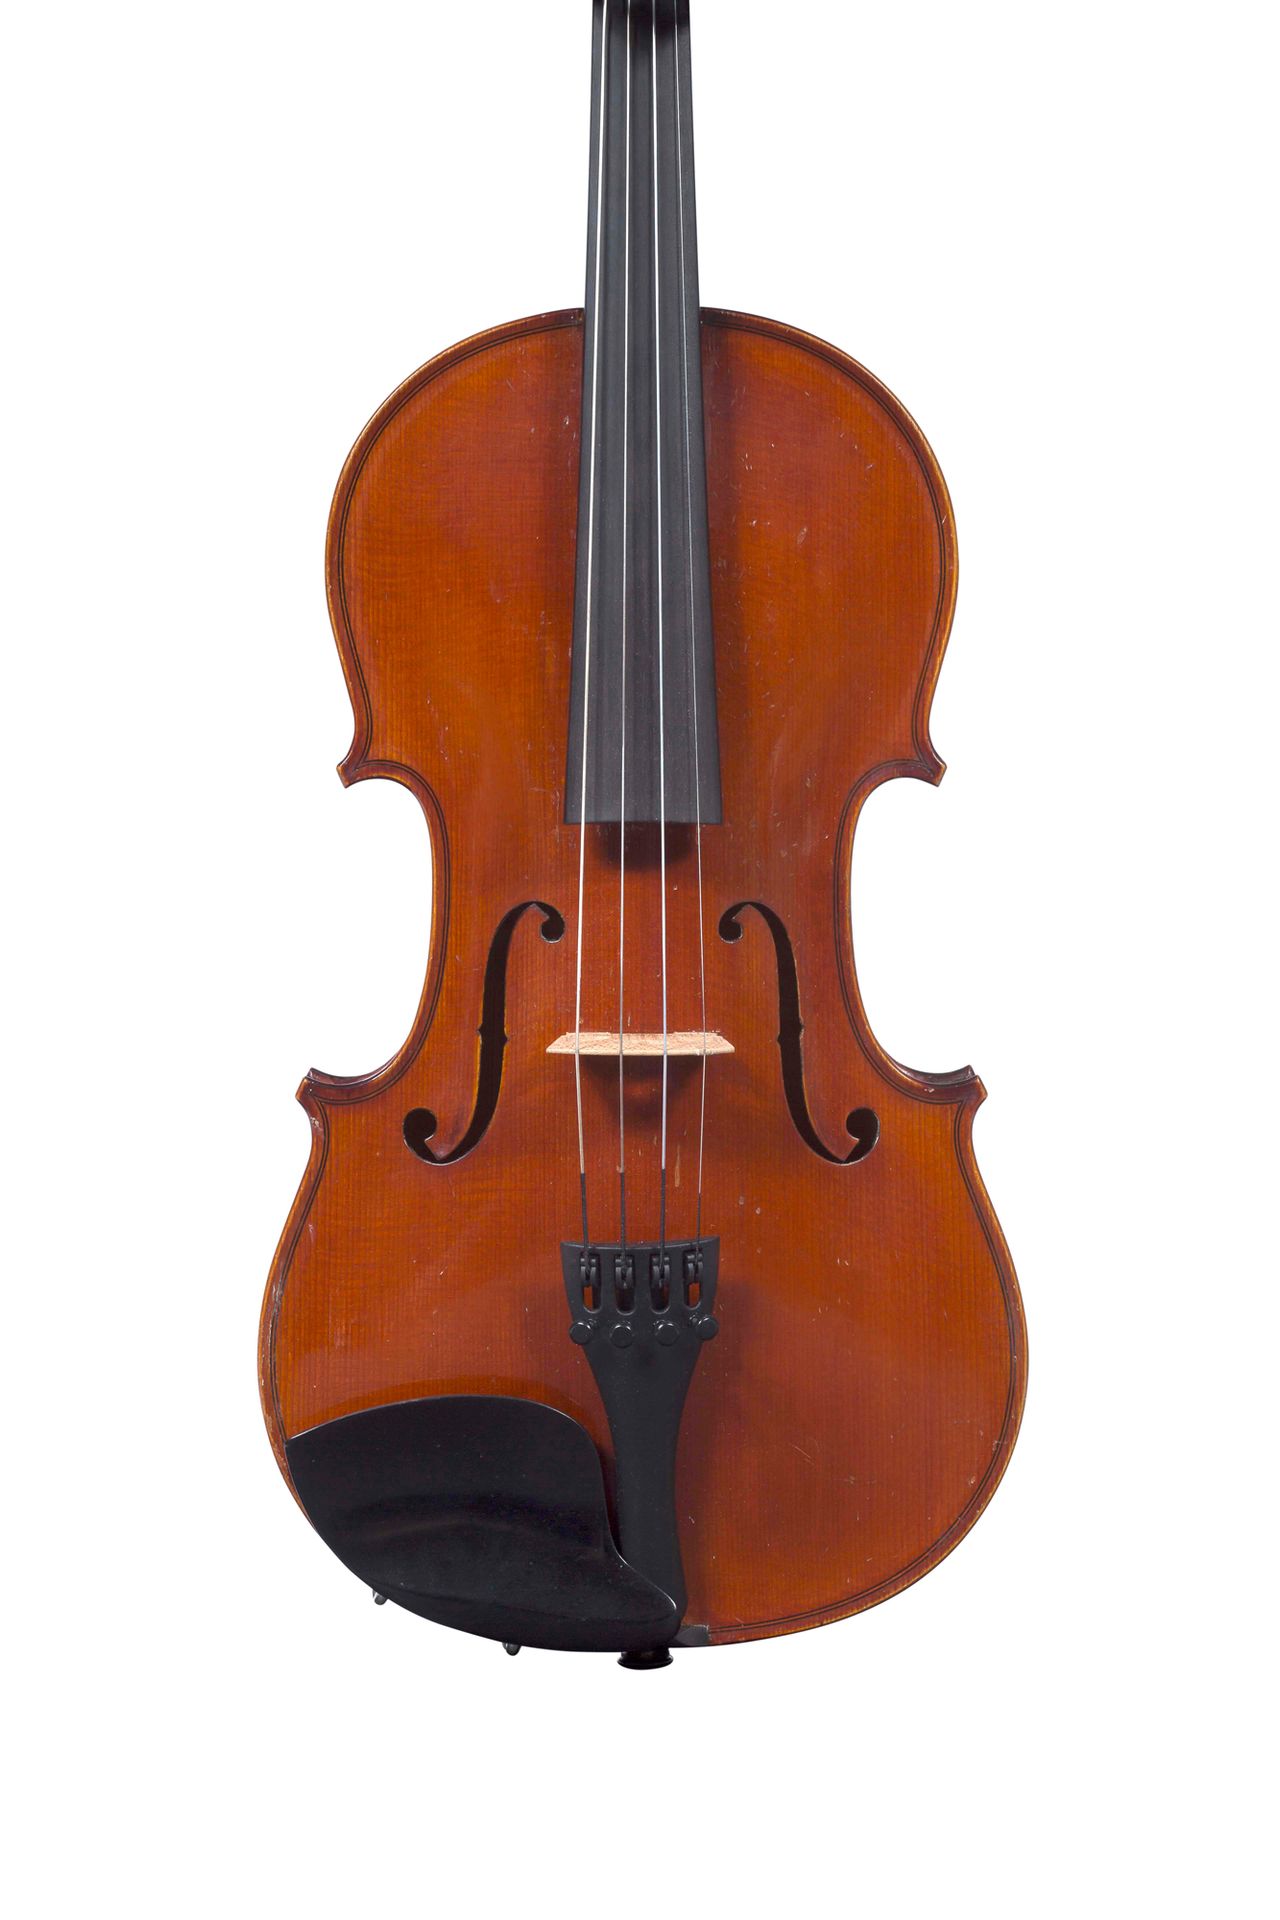 Null 奥古斯特-德利维的小提琴
1905年在巴黎制造，编号145
展览模型
原有的标签和铁印
状况良好 
背面有359毫米
Jean Jacques Ram&hellip;